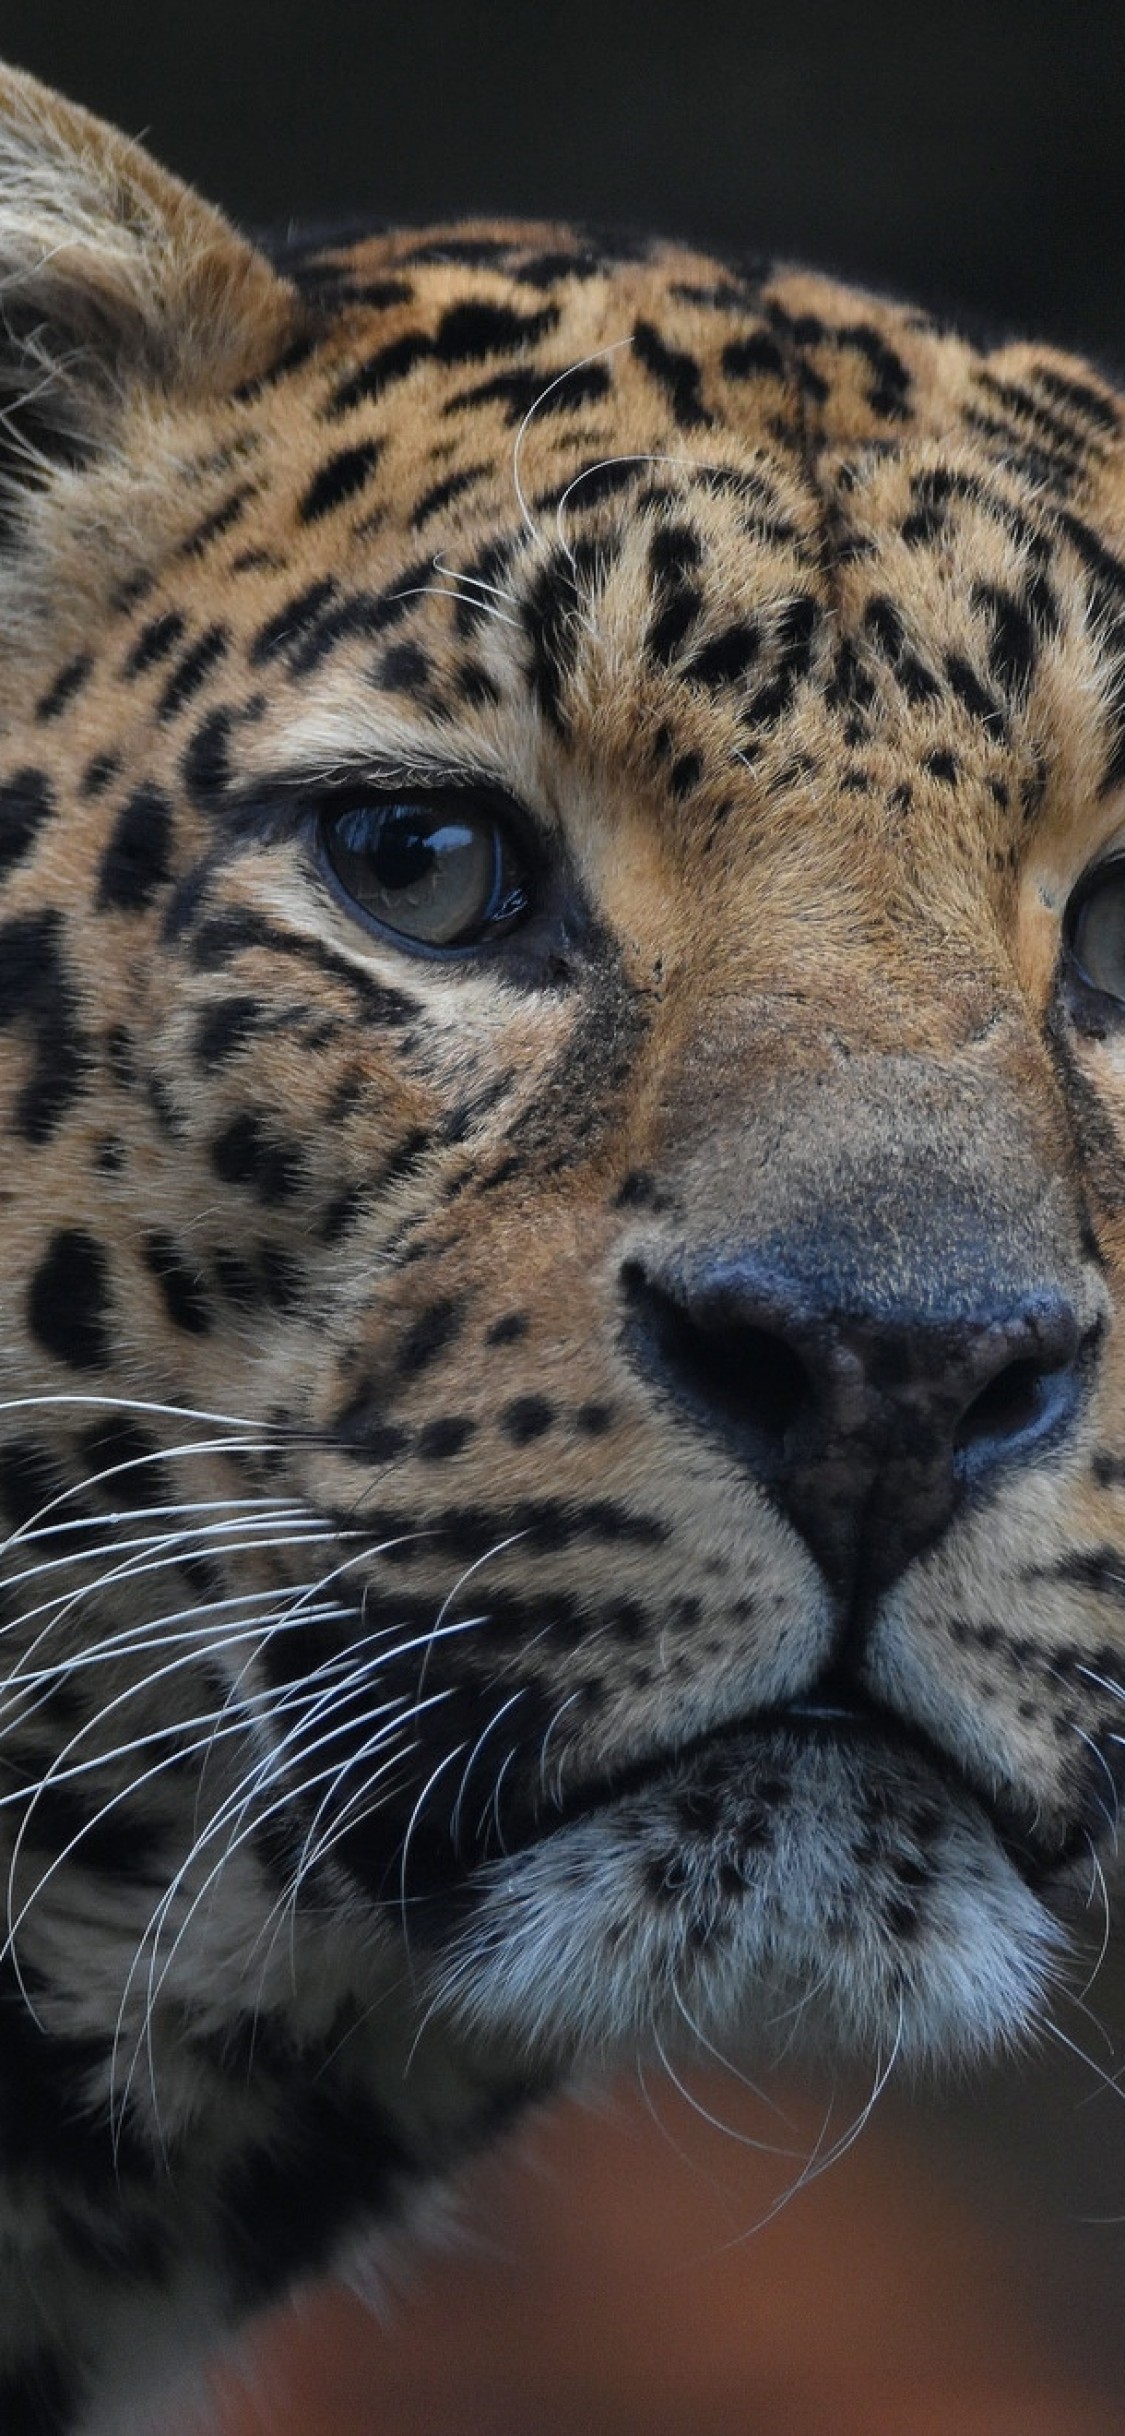 Jaguar, Close-up, Predator, Big Cats - Jaguar Wallpaper Iphone X - HD Wallpaper 